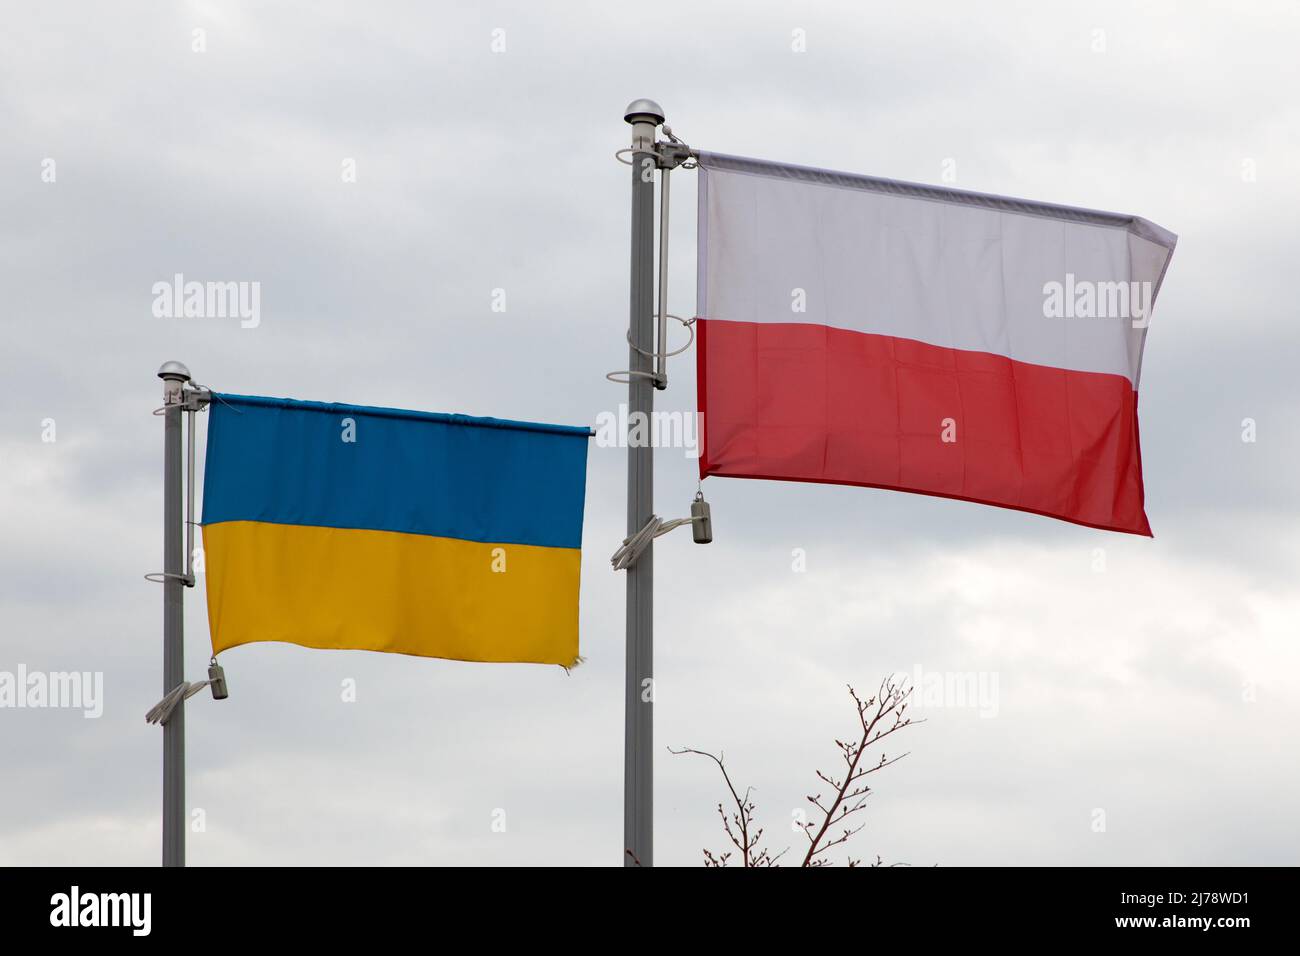 Banderas polacas y ucranianas vuelan lado a lado, fuera de la Oficina Municipal Pruszcz Gdanski, Polonia Foto de stock